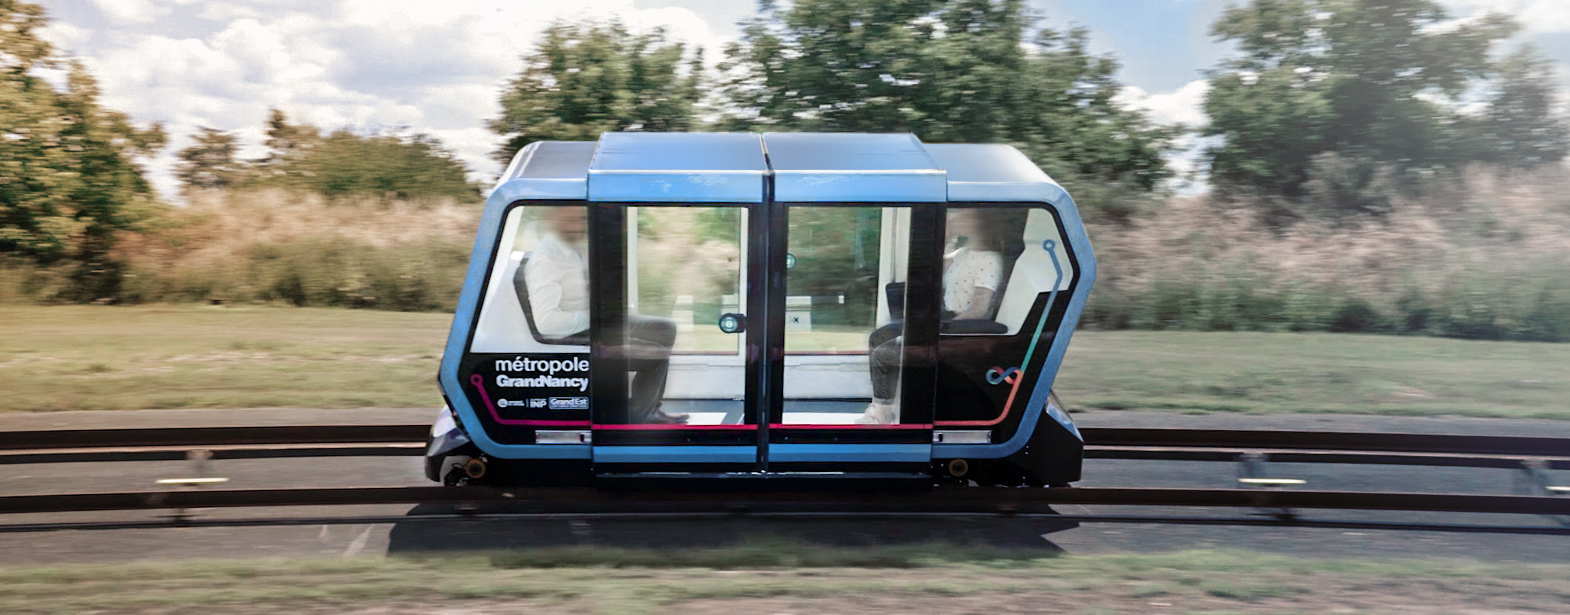 Urbanloop, smart mobility, JO 224